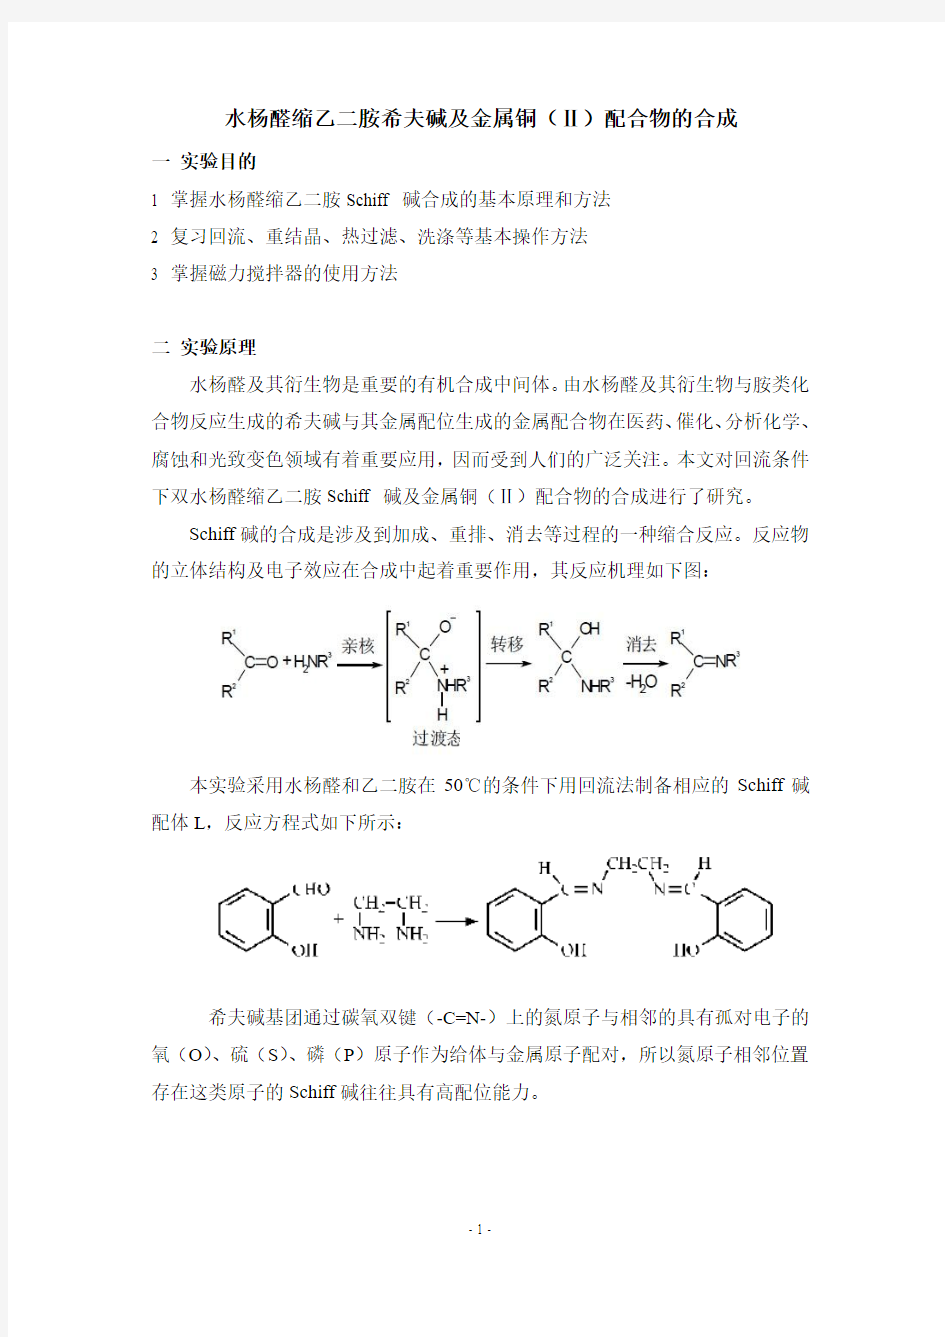 水杨醛缩乙二胺席夫碱及金属铜(Ⅱ)配合物的合成